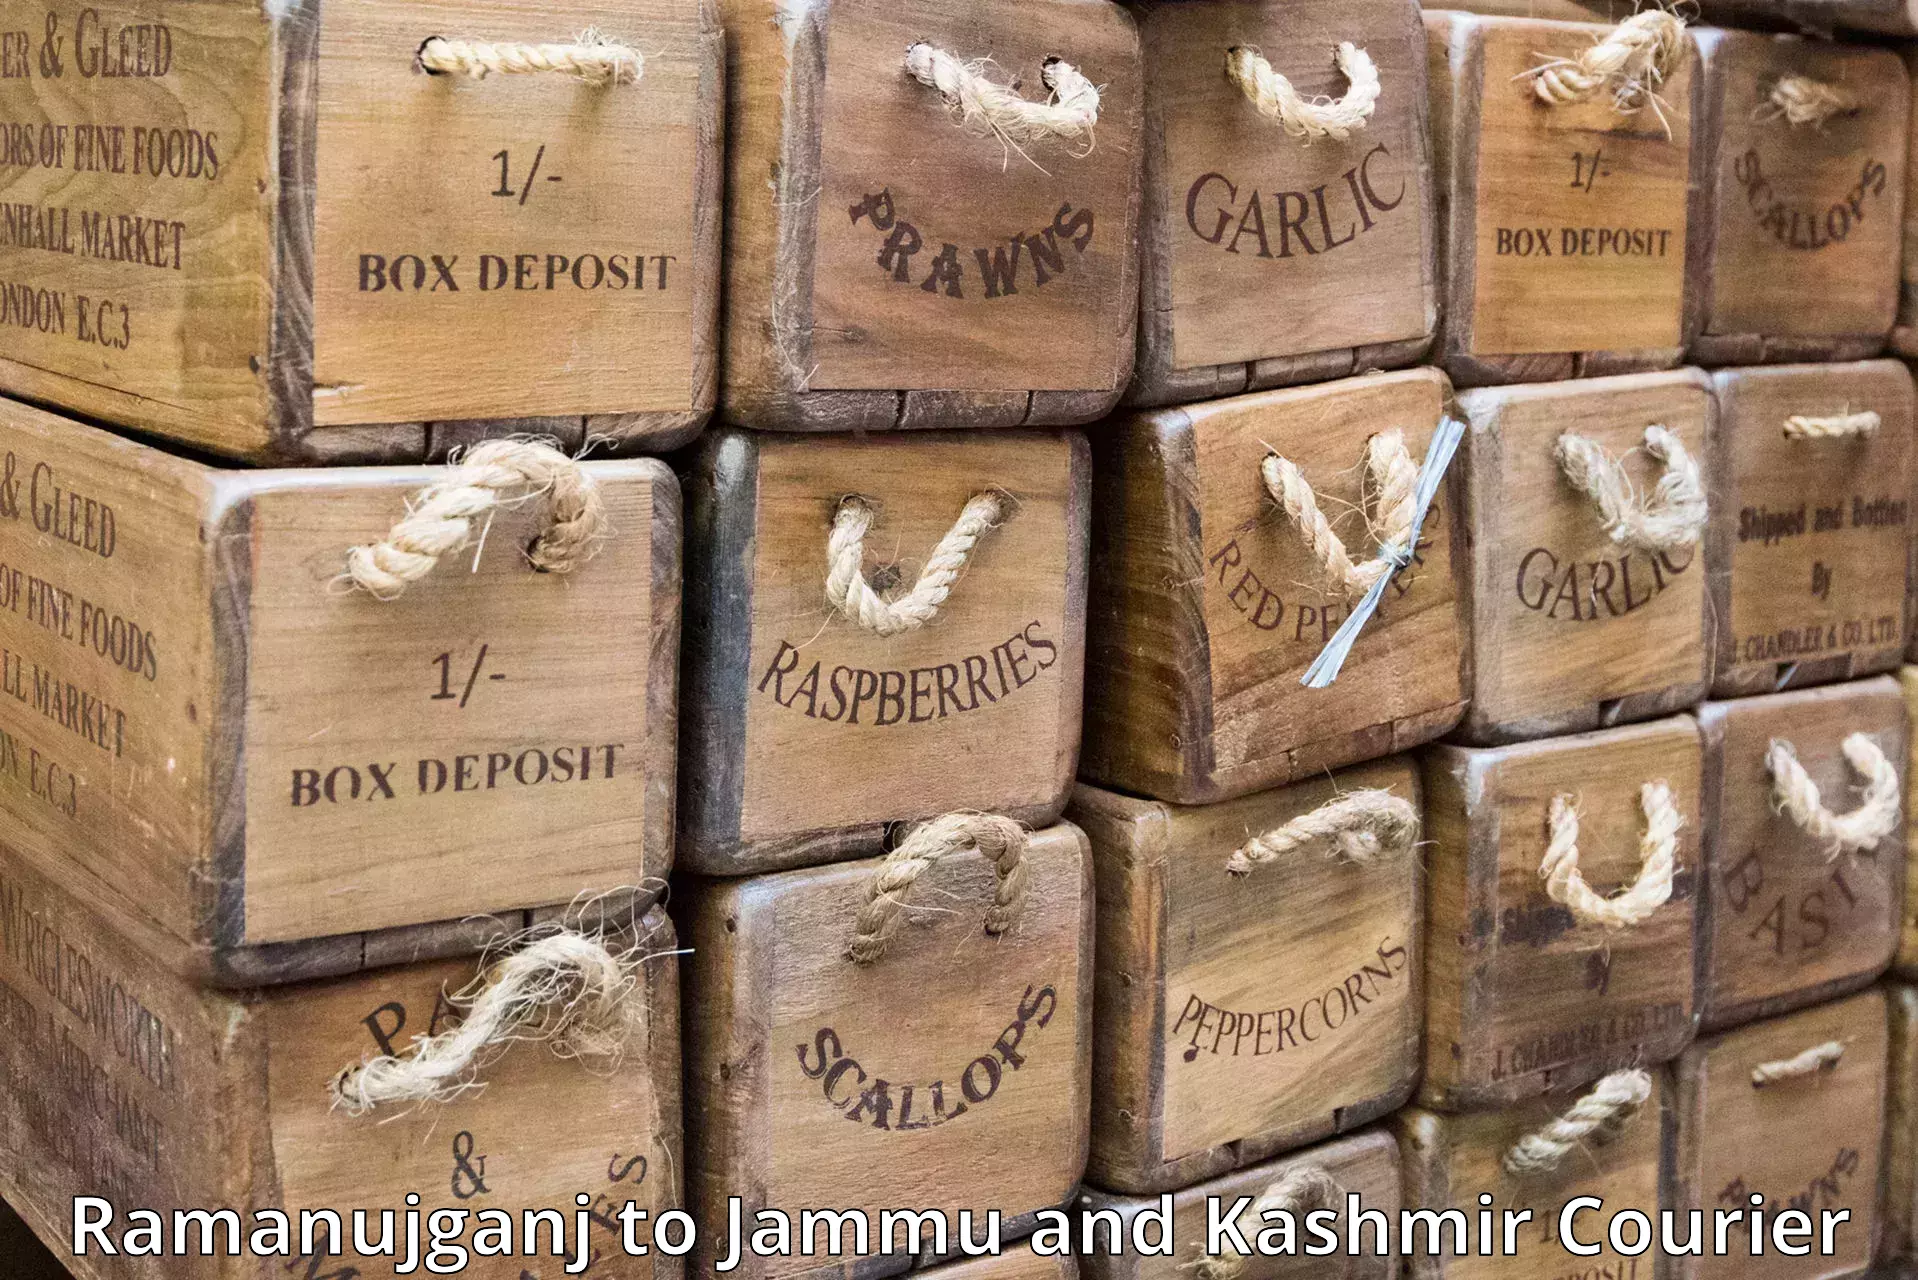 Quick dispatch service Ramanujganj to Jammu and Kashmir